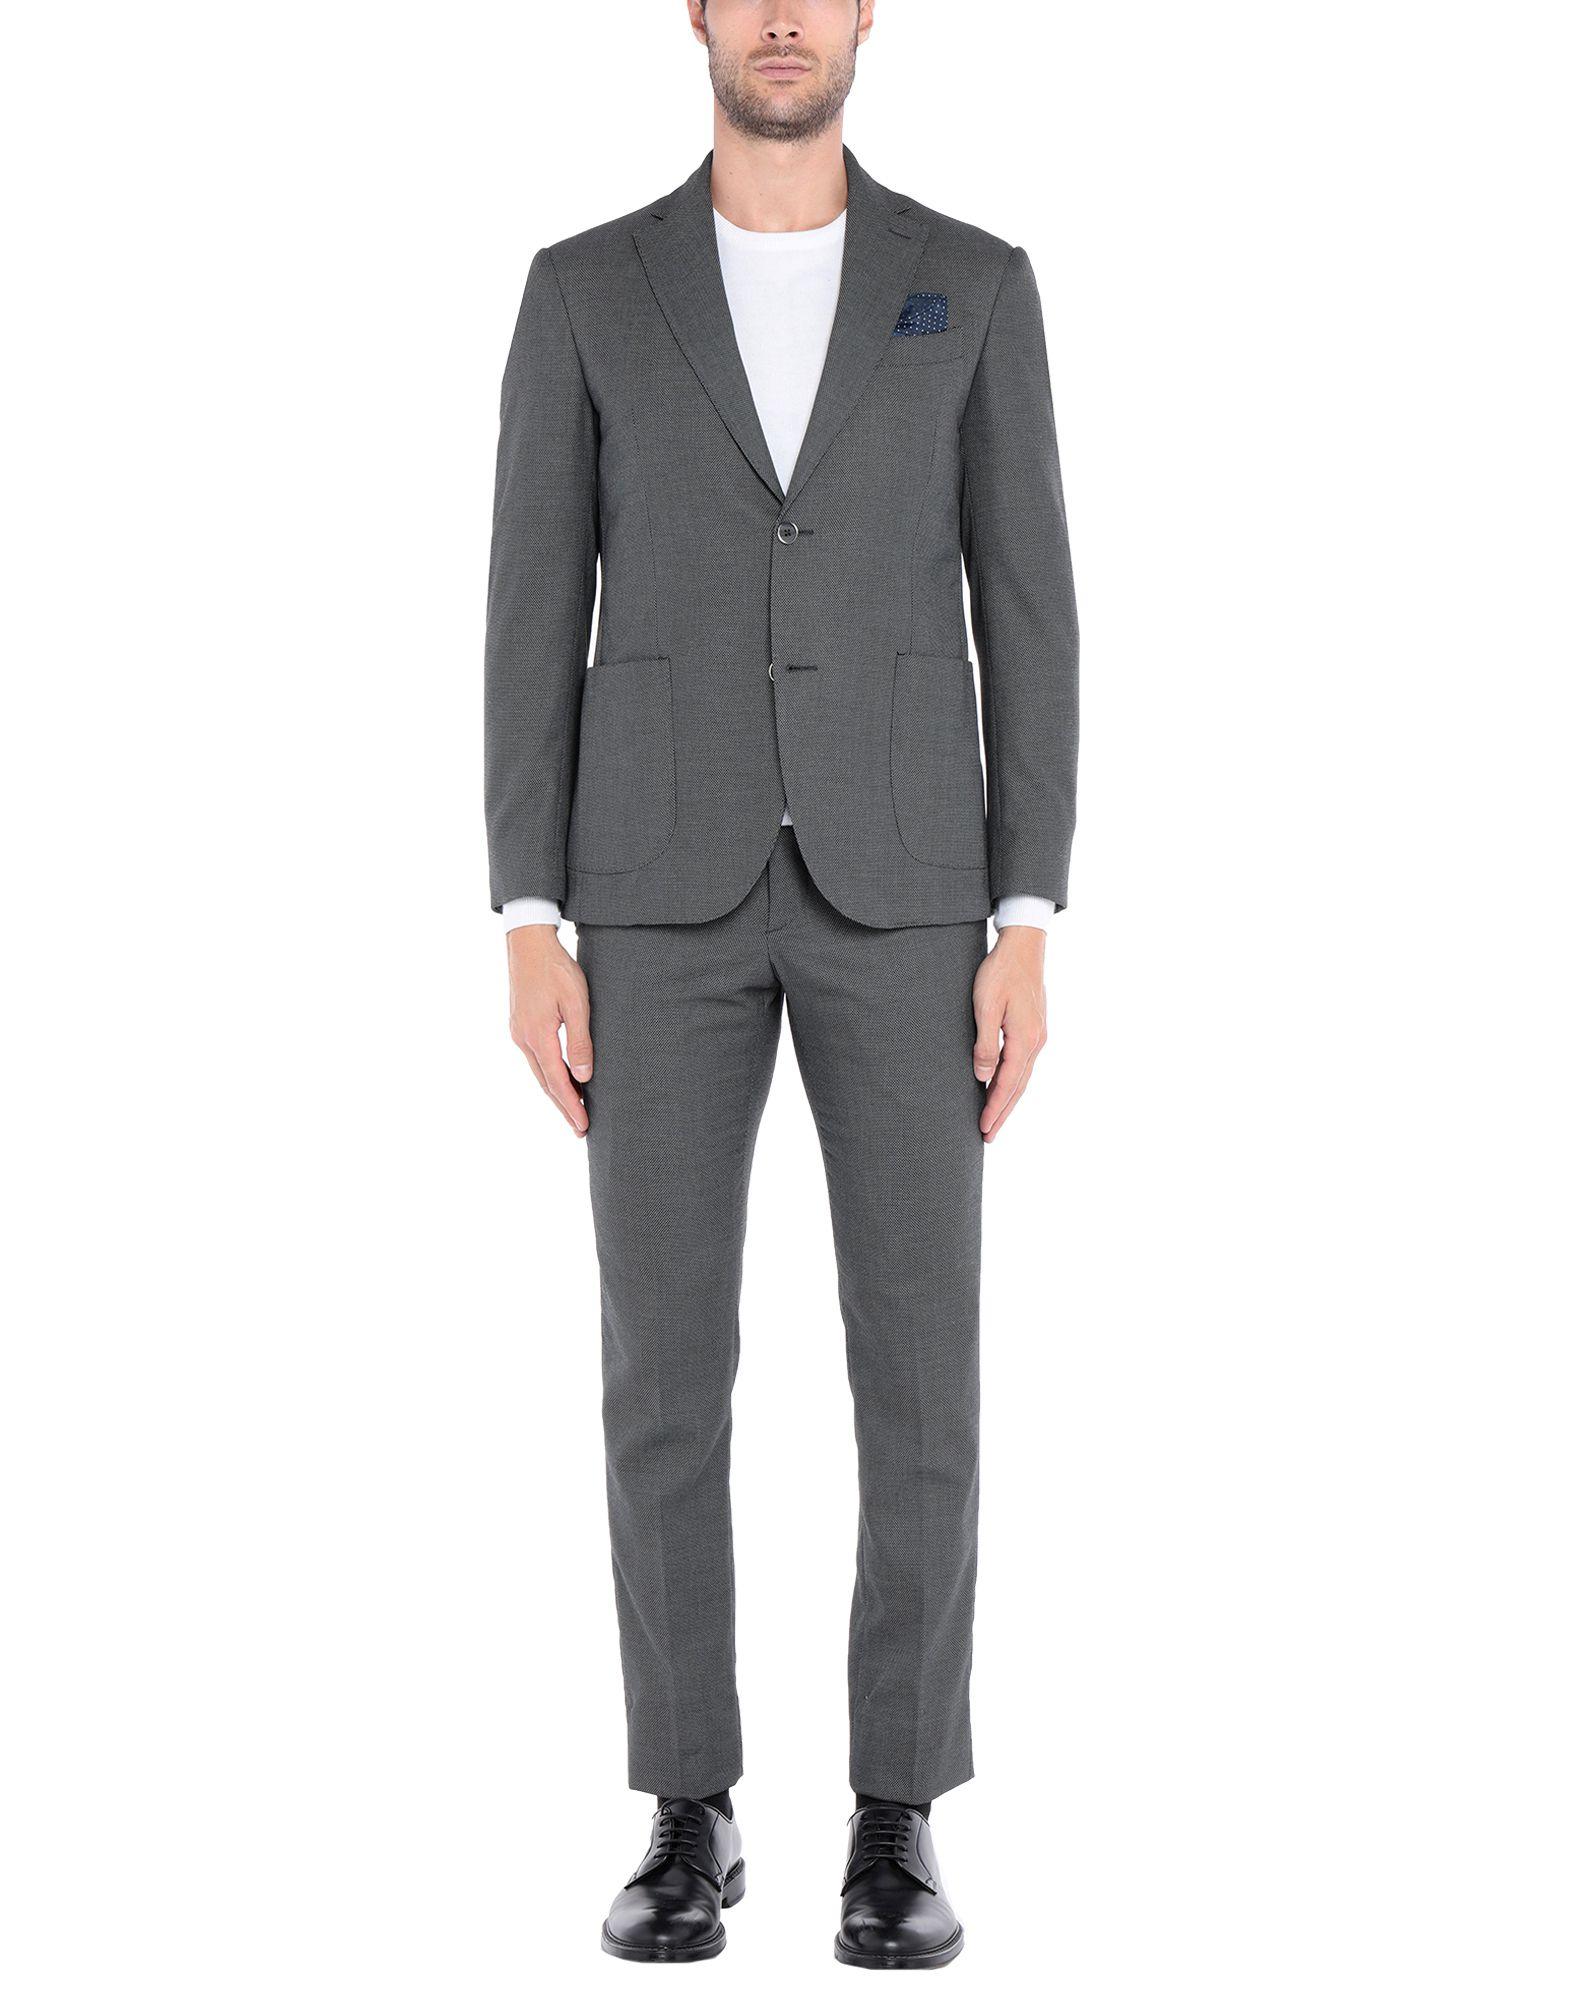 Emanuel Ungaro Synthetic Suit in Grey (Gray) for Men - Lyst